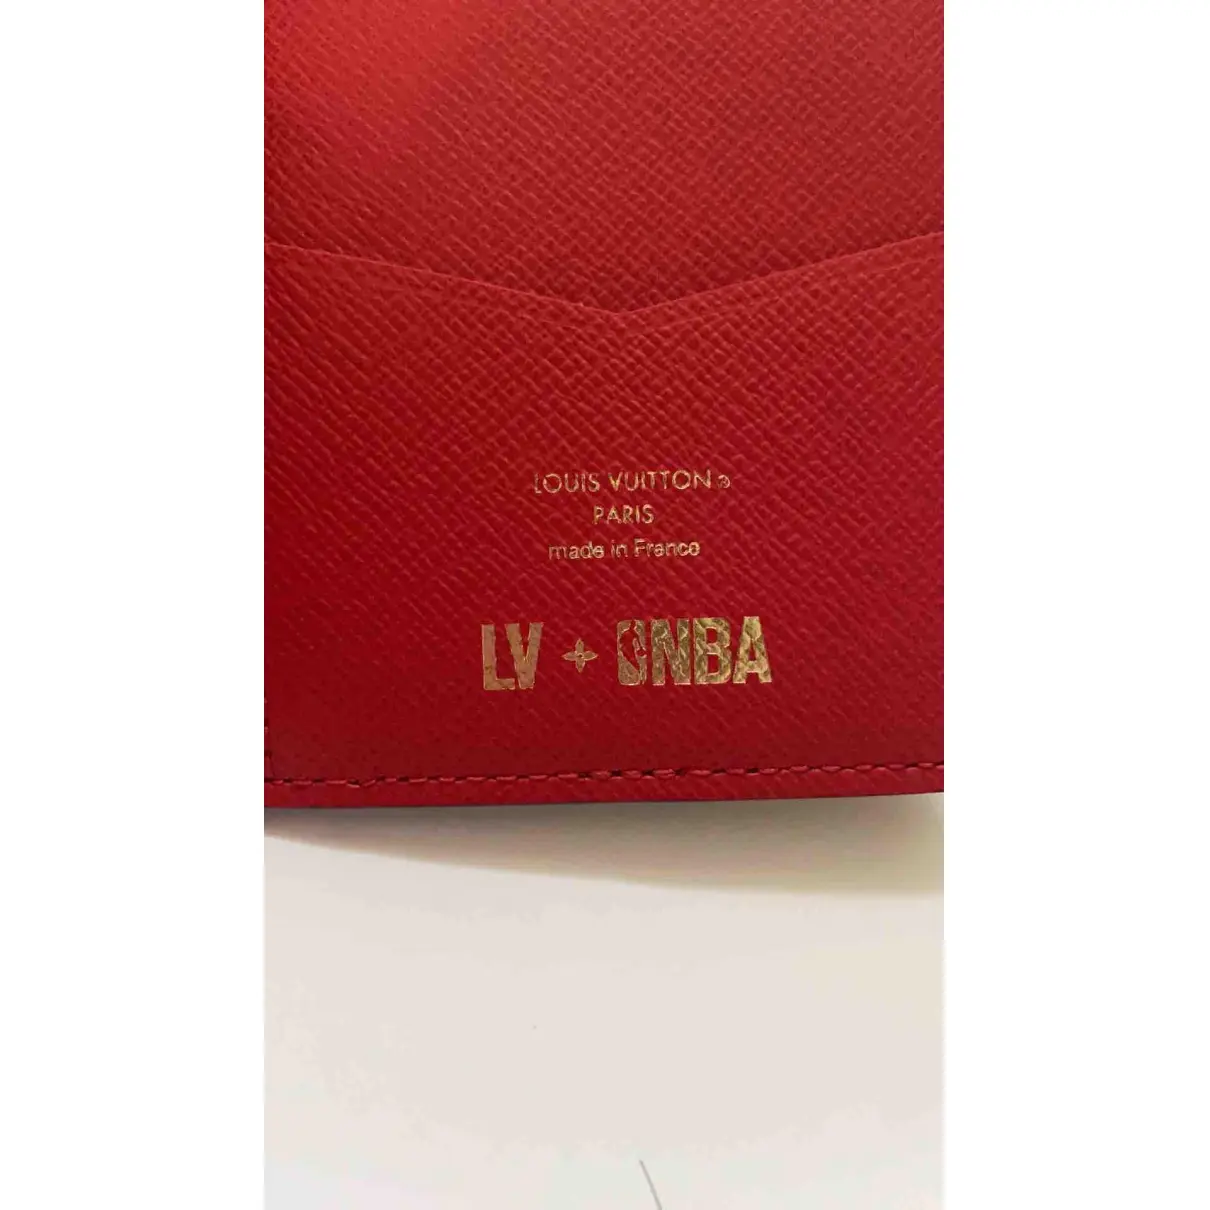 Cloth small bag Louis Vuitton X NBA